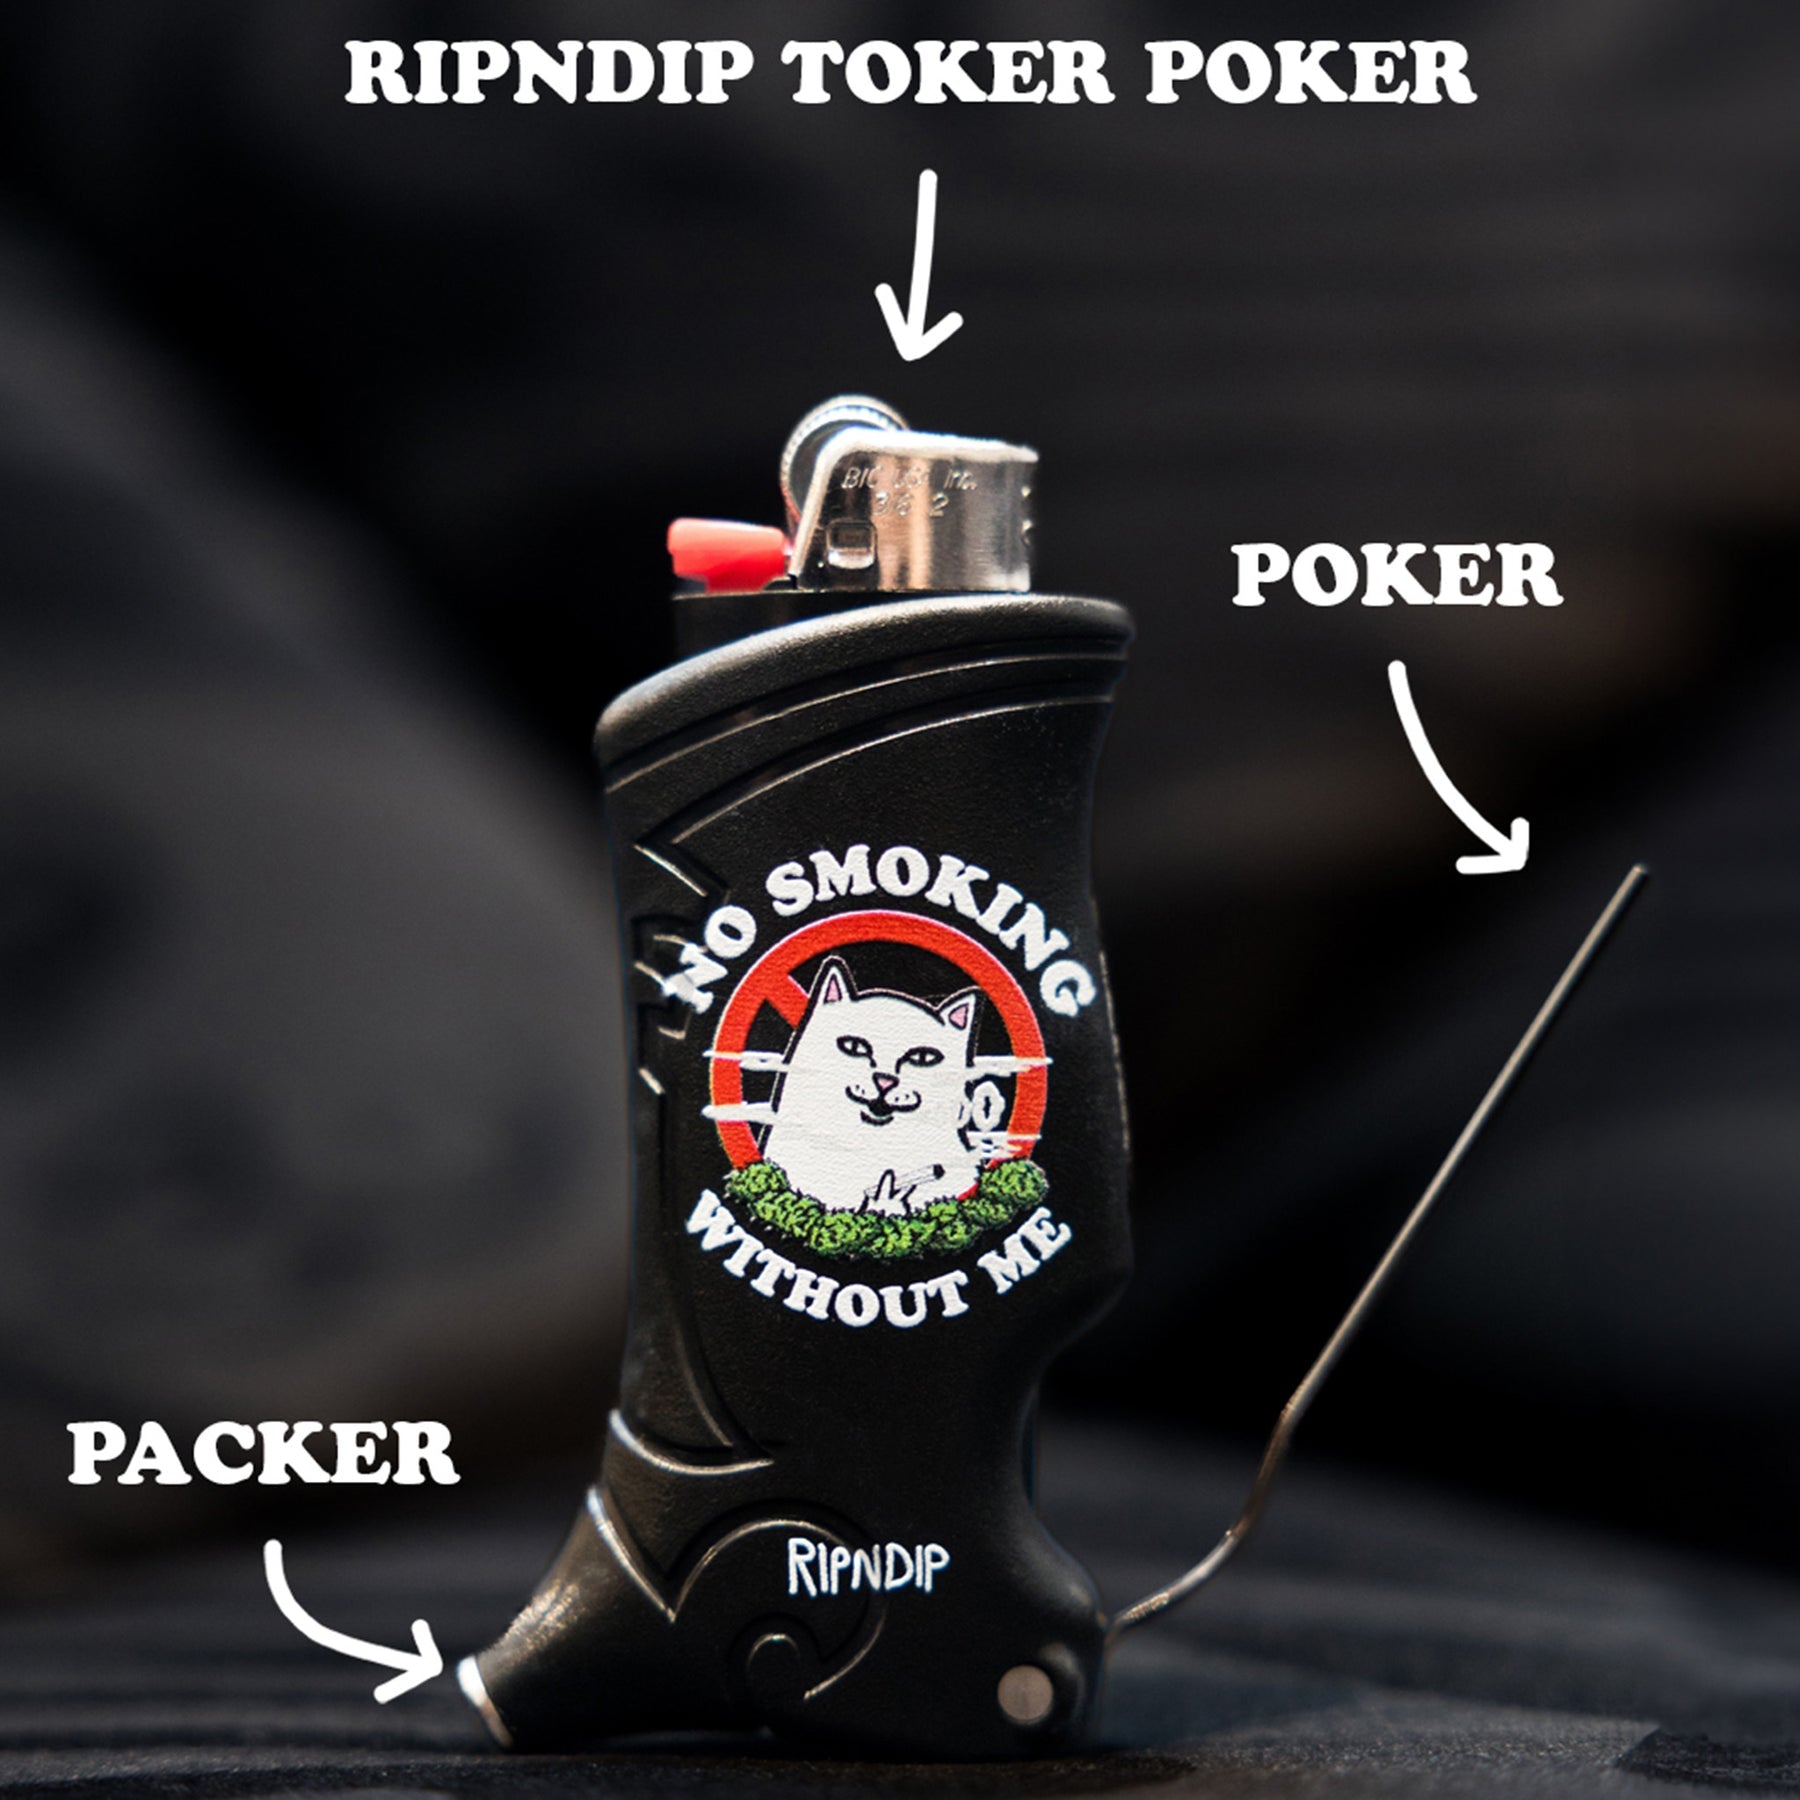 No Smoking Toker Poker